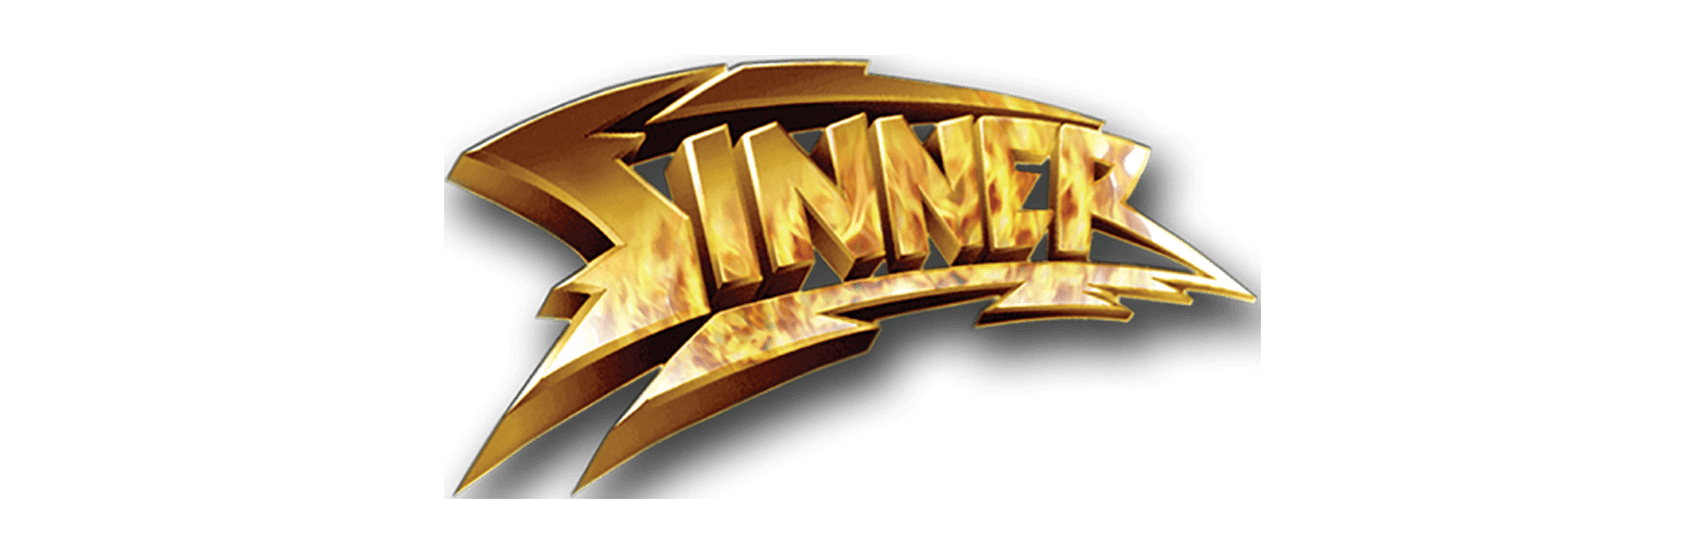 Sinner Logo - Sinner | NOISE RECORDS